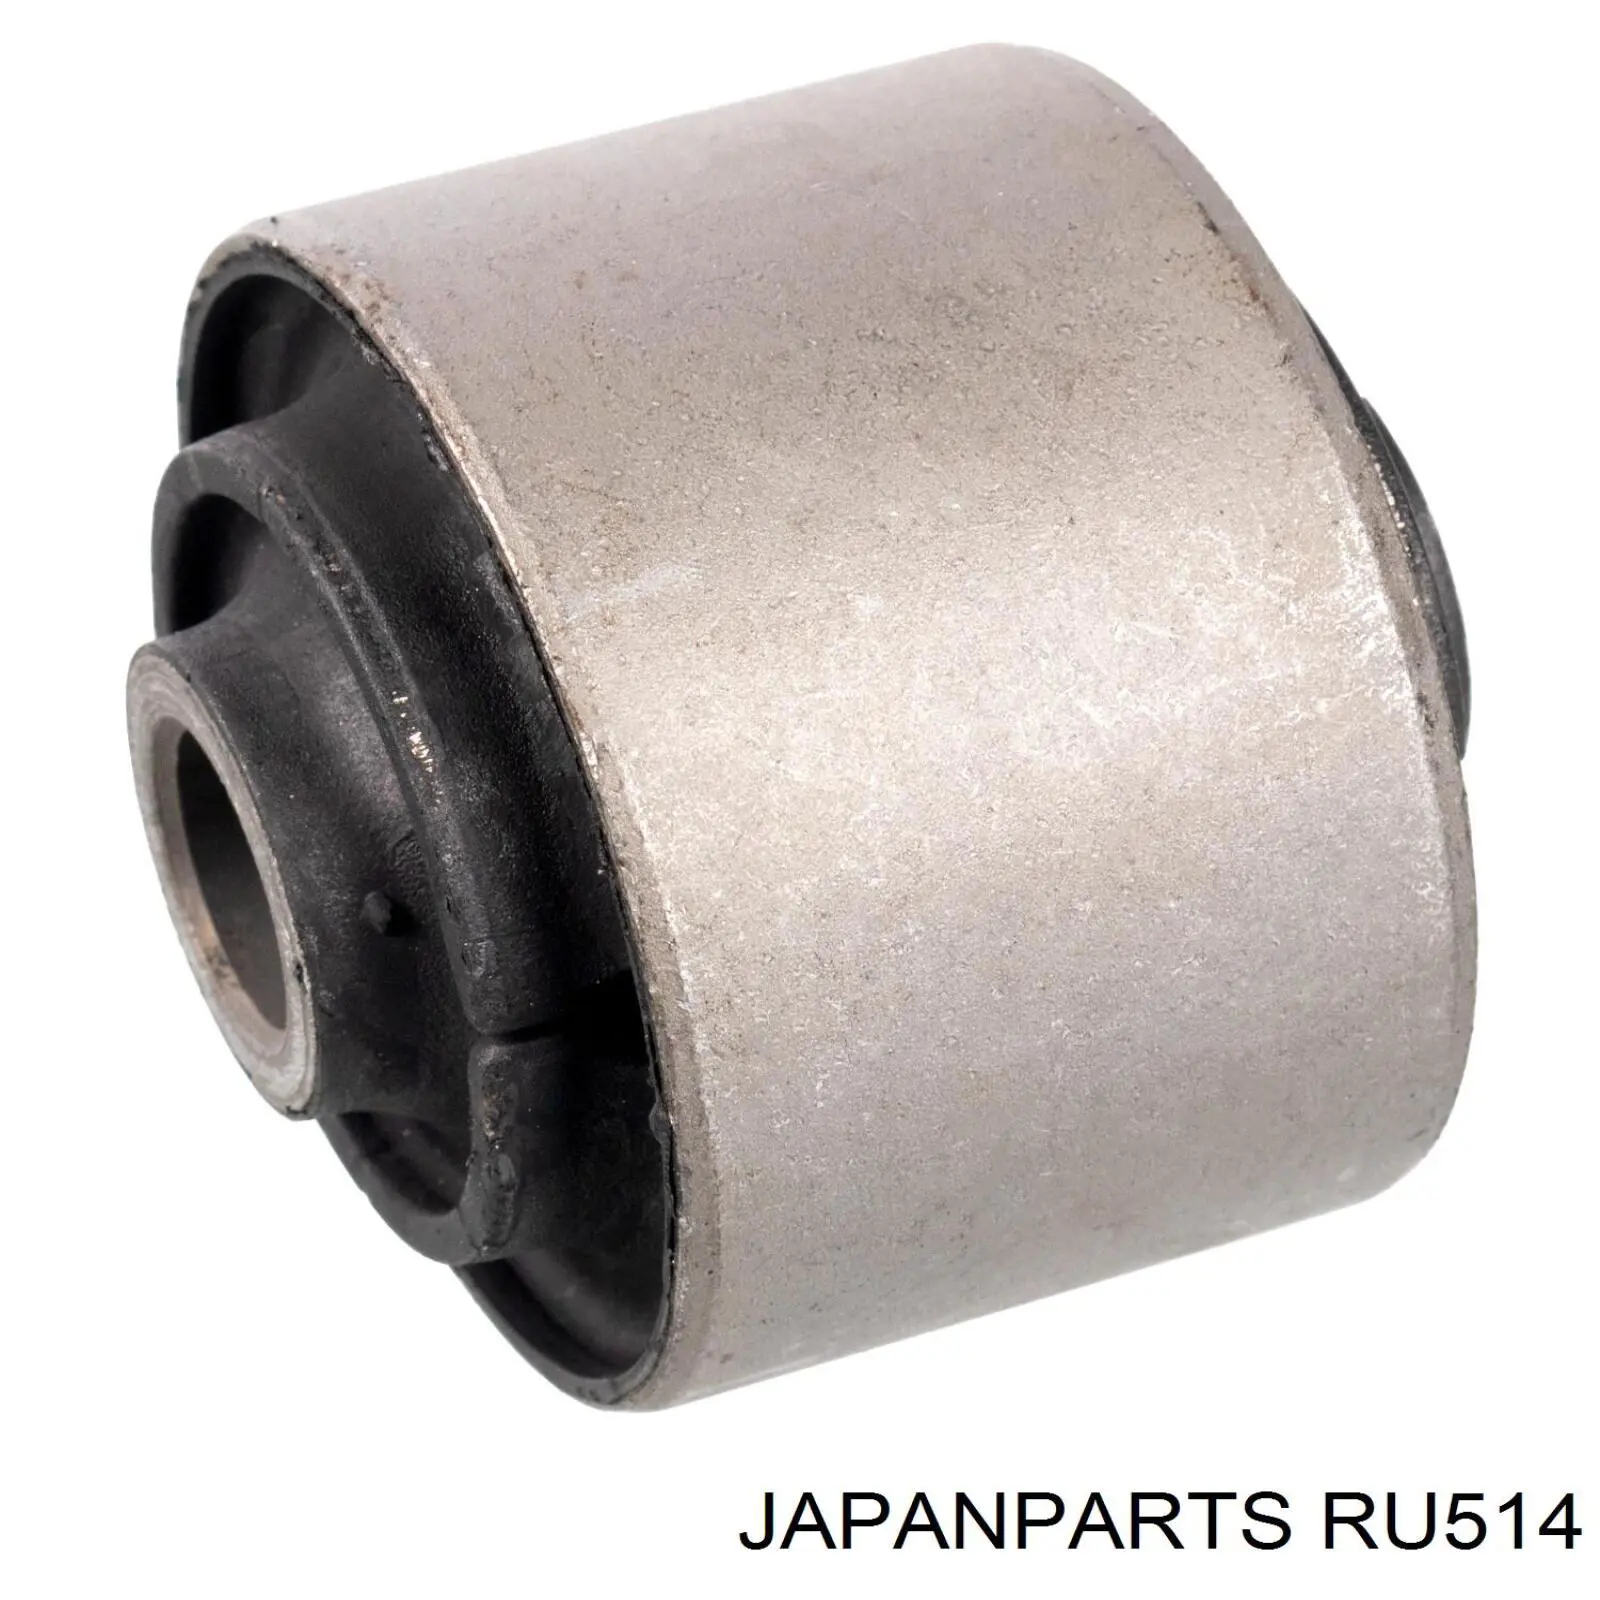 Сайлентблок заднего продольного рычага задний Japan Parts RU514